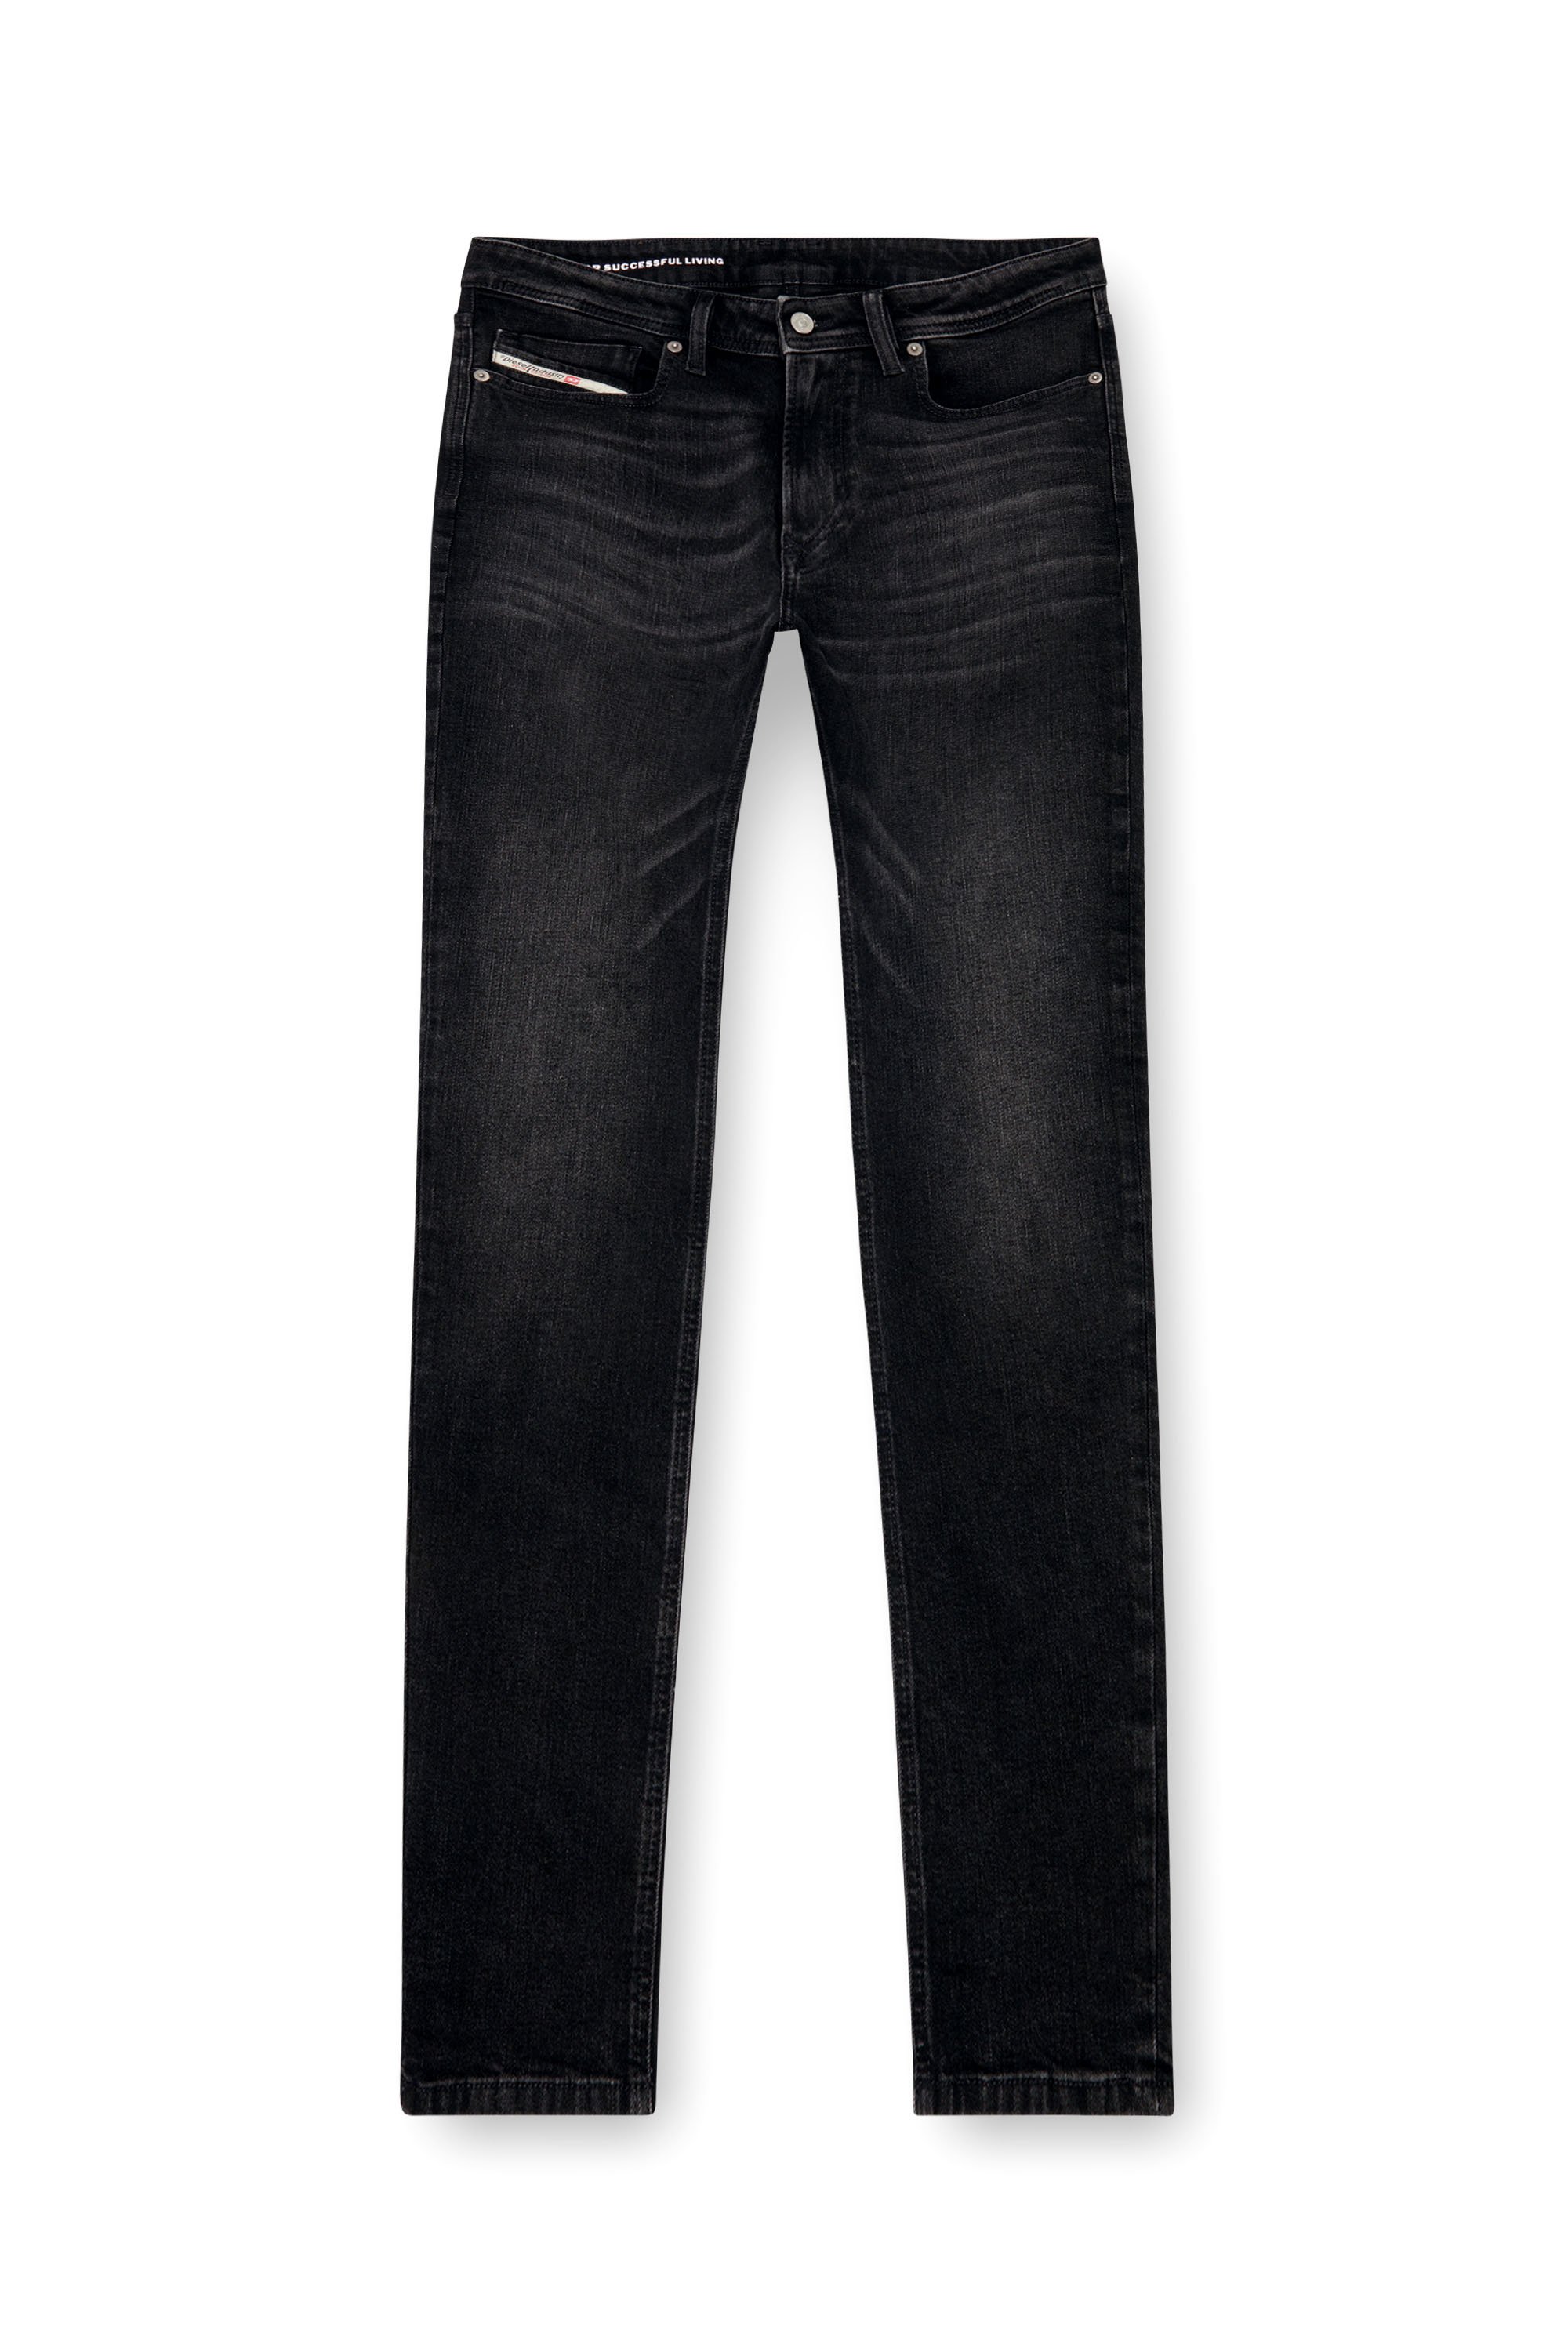 Diesel - Skinny Jeans 1979 Sleenker 0GRDA, Hombre Skinny Jeans - 1979 Sleenker in Negro - Image 5